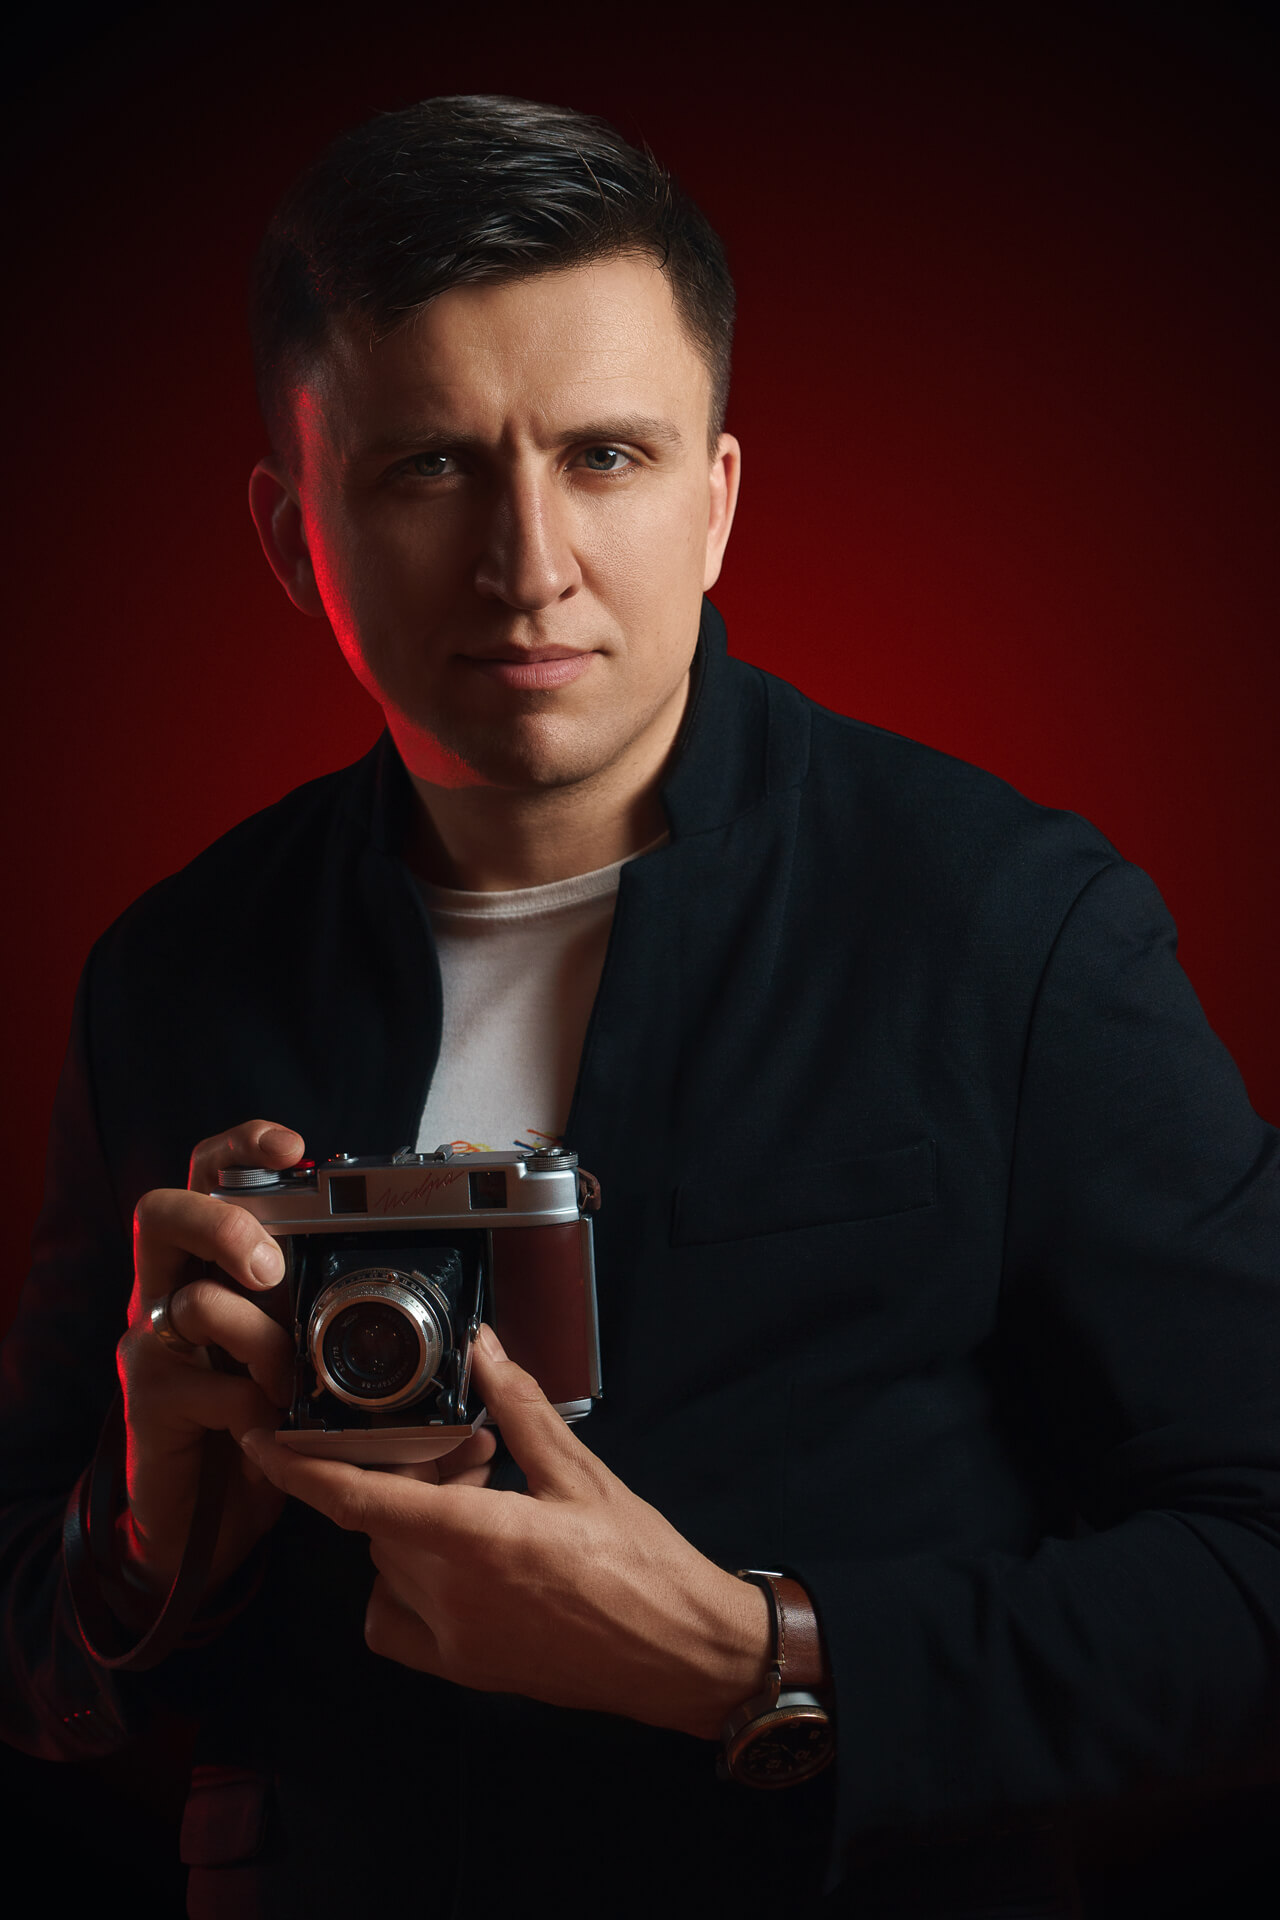 Профессиональный фотограф Роман Какоткин - на фото 2020 - 41 год